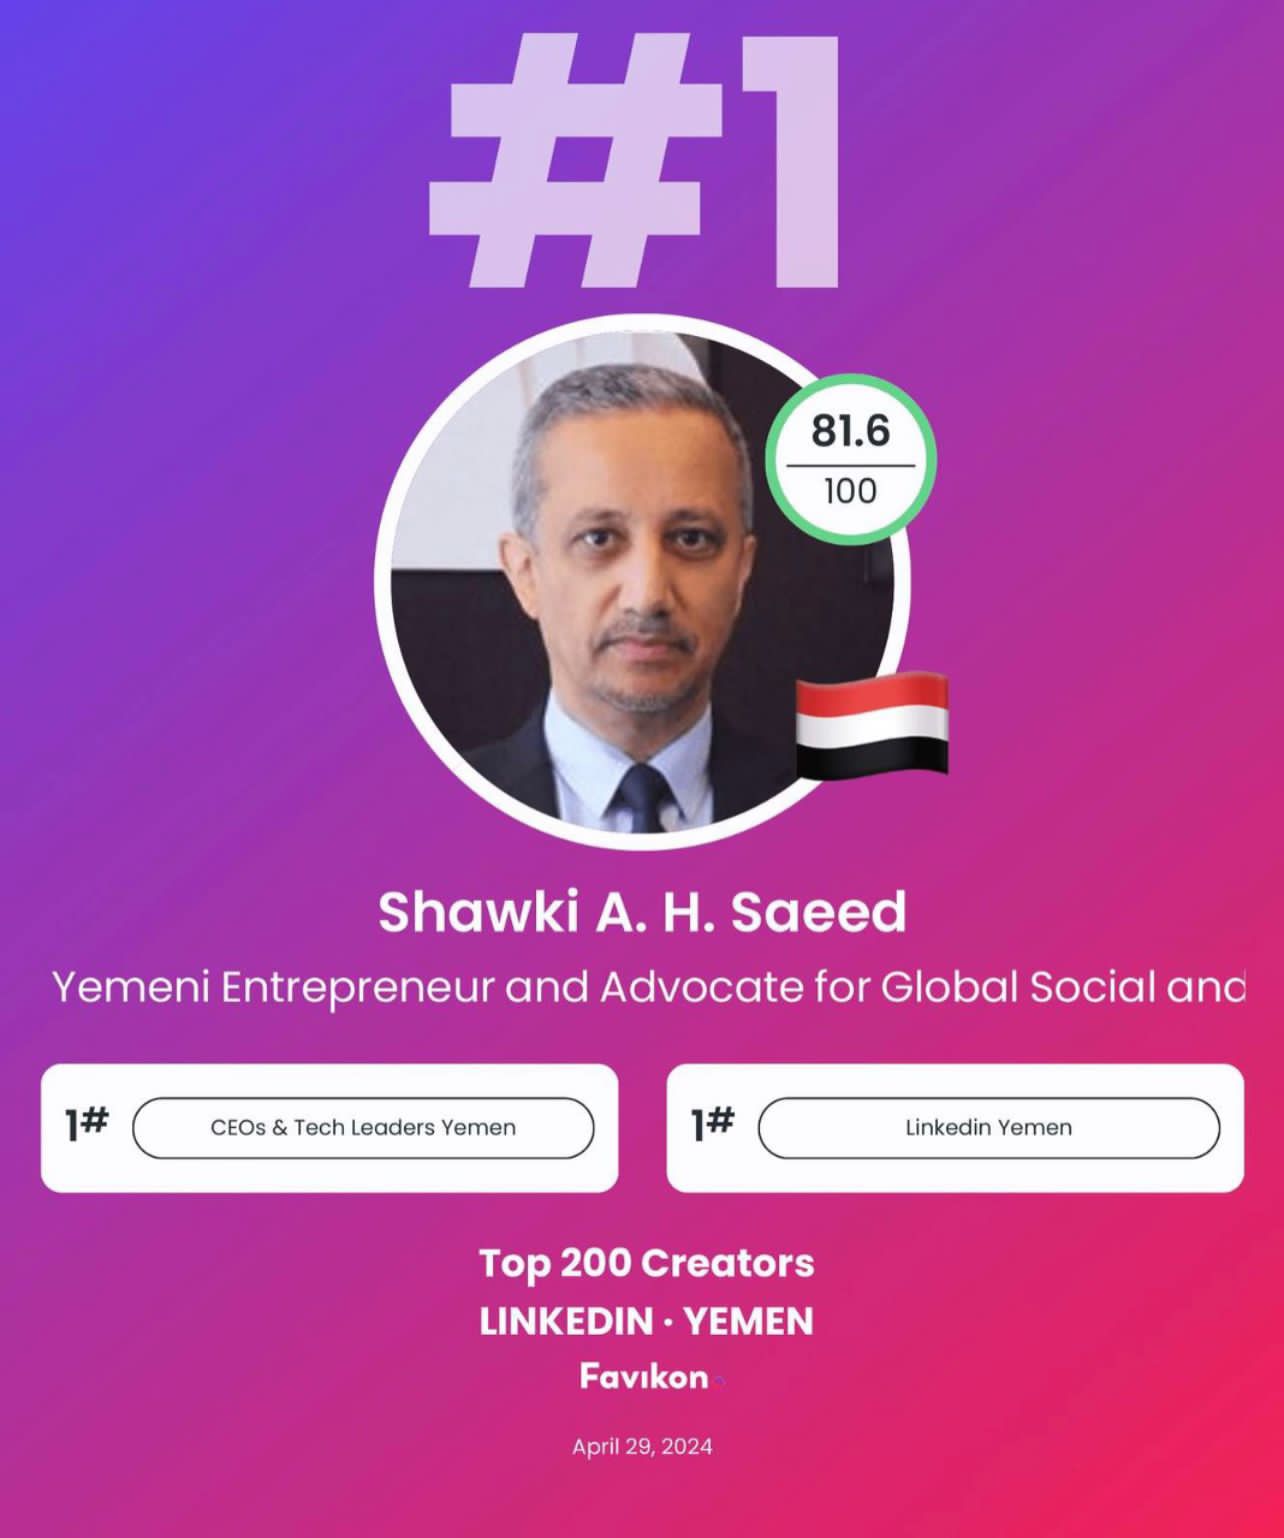 منصة عالمية تعلن شوقي احمد هائل سعيد الشخصية الاكثر الهاما وتأثيرا اجتماعيا في اليمن 